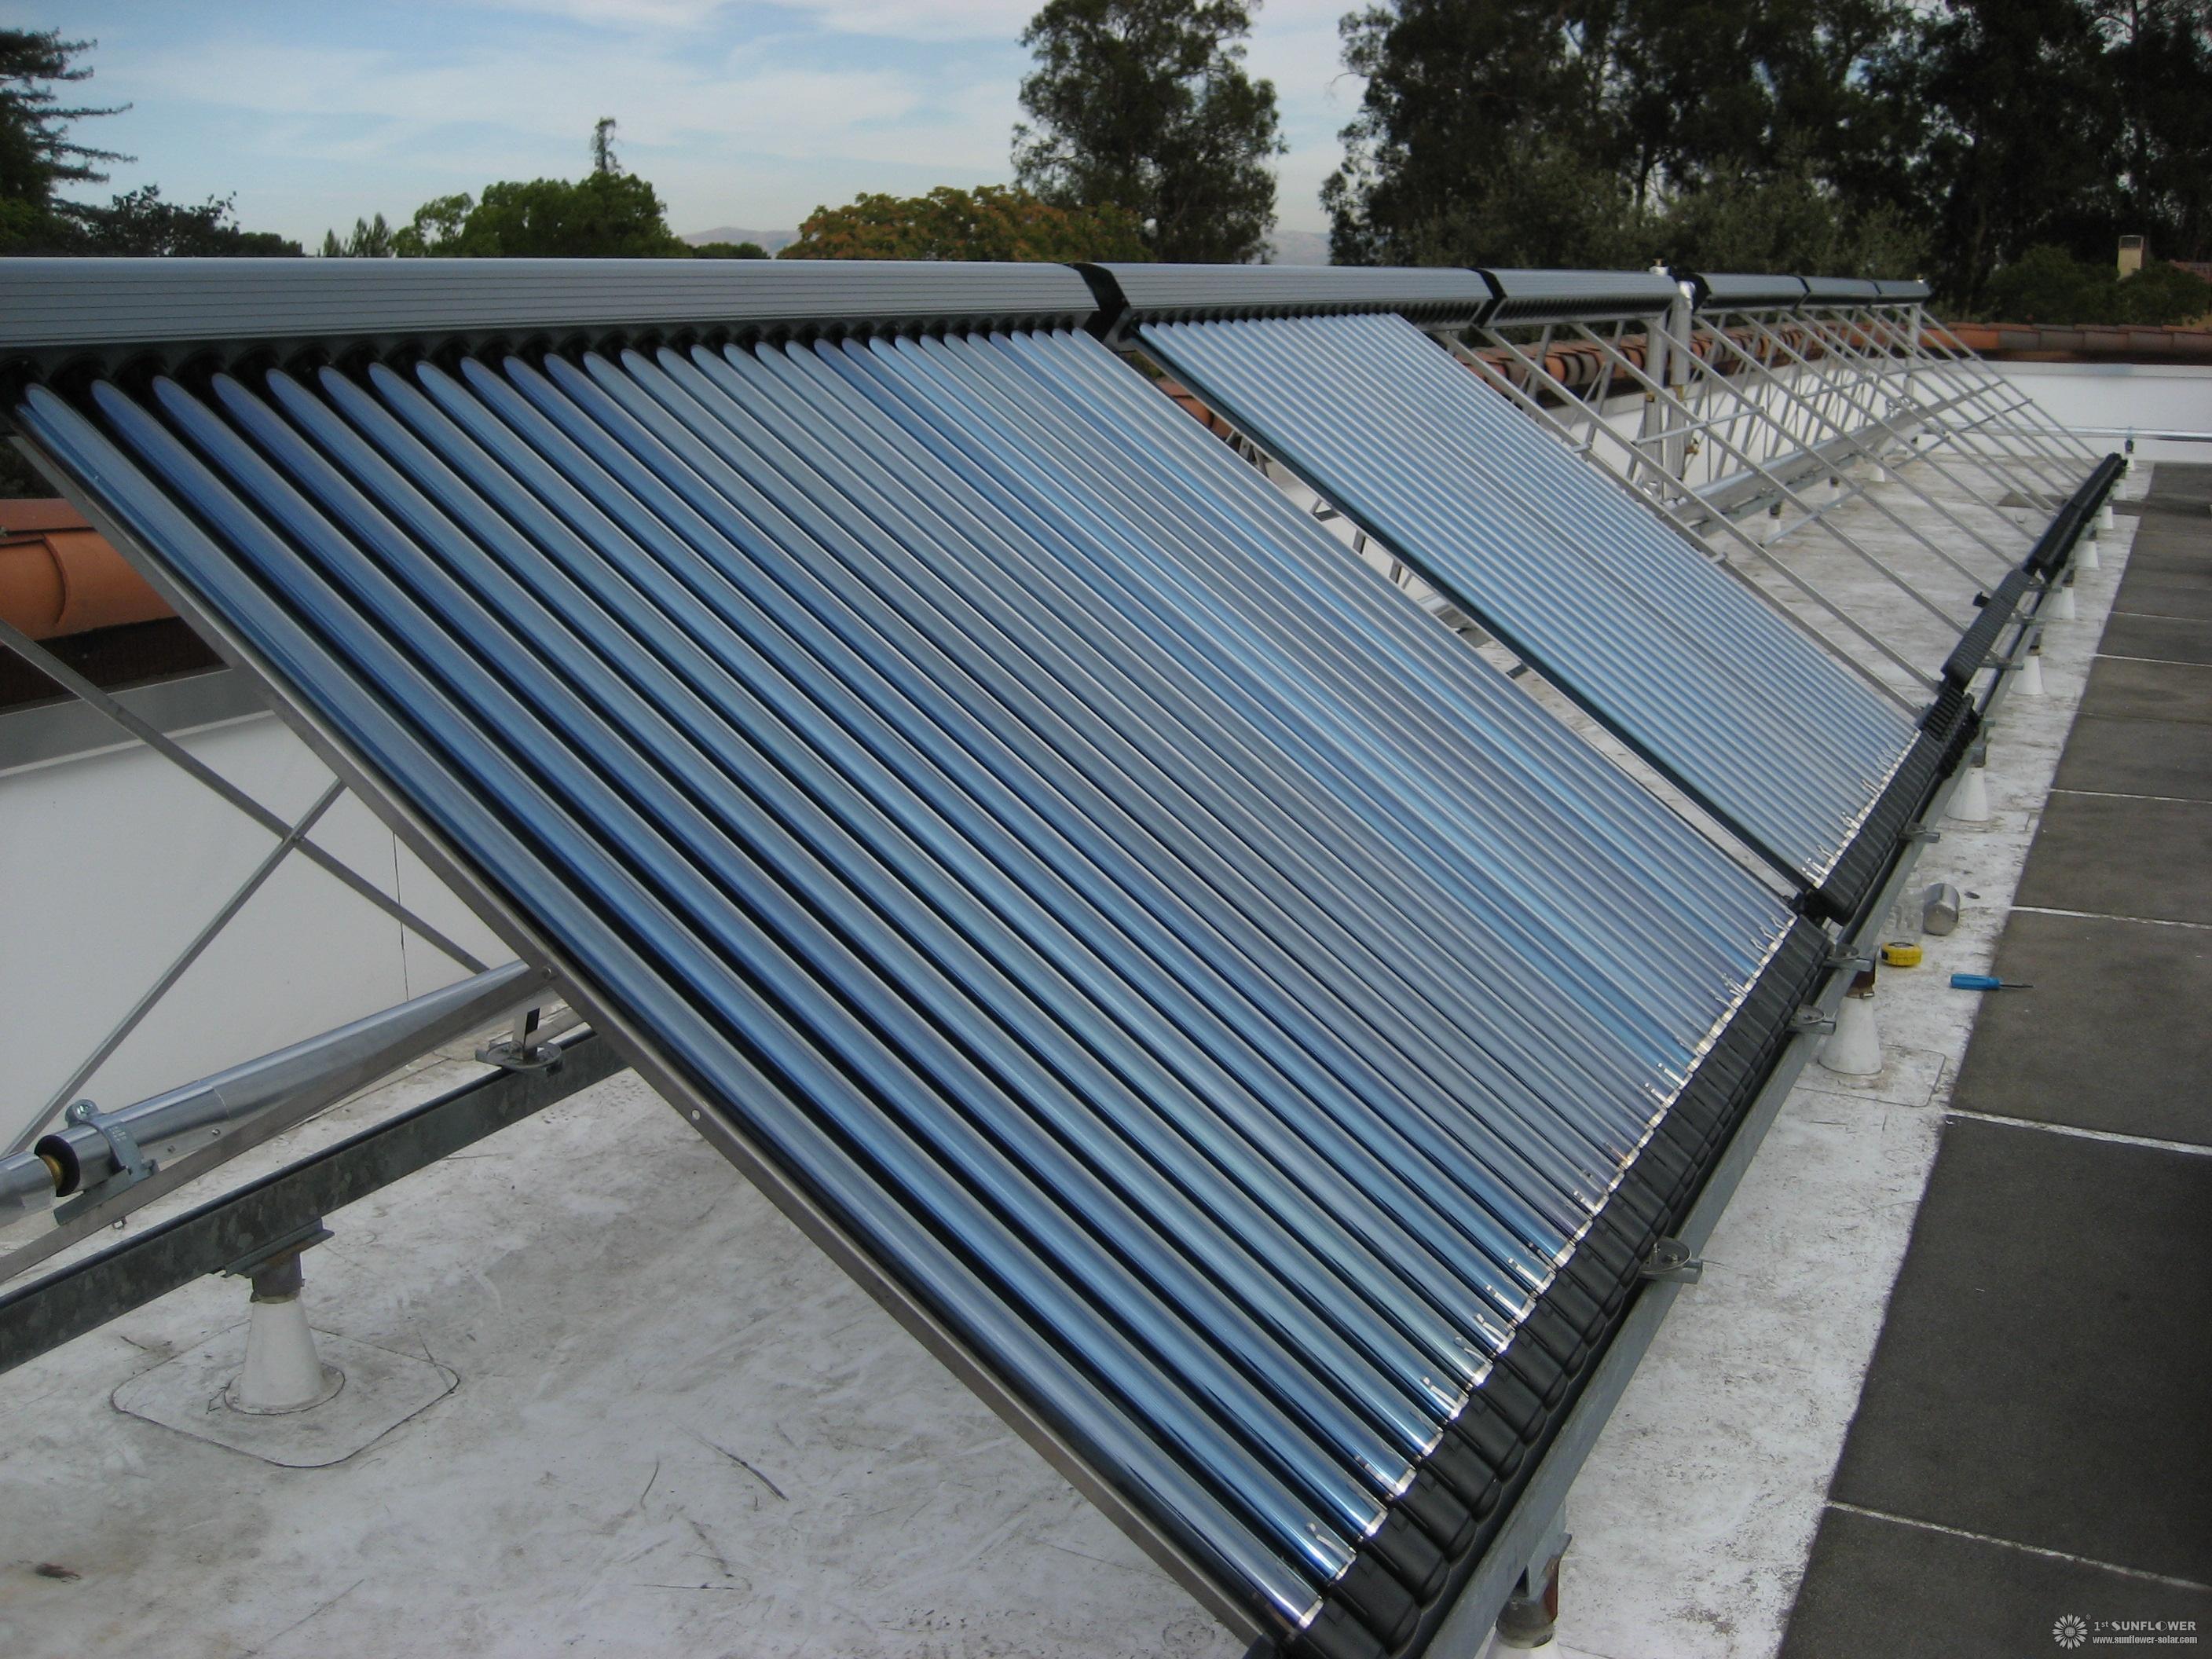 Calentador de agua solar